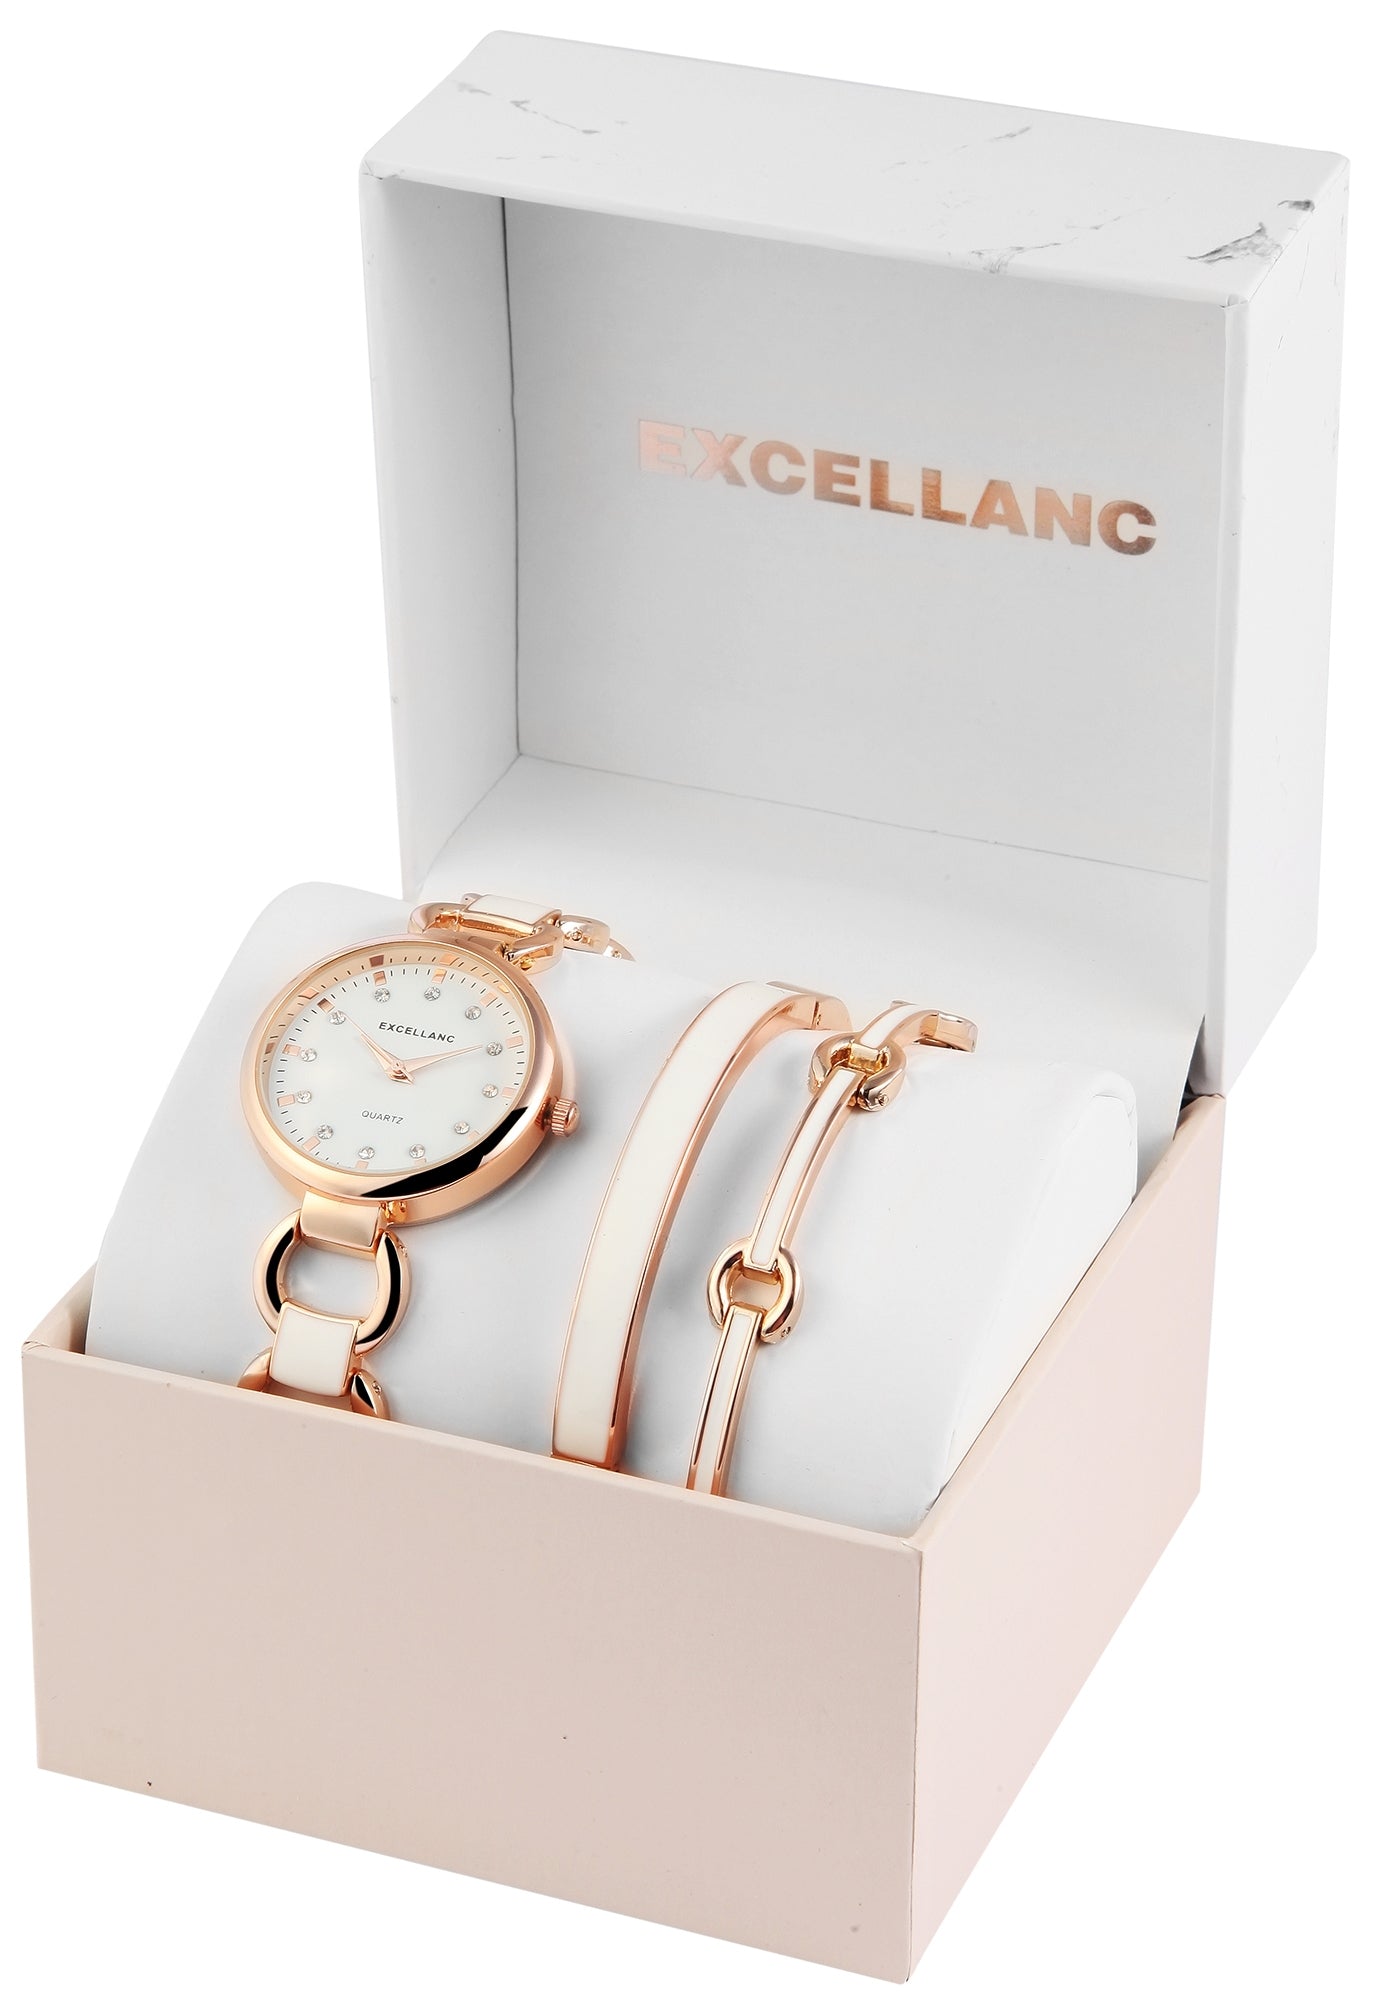 Reloj Excellanc para mujer con 2 brazaletes EX0429, color oro rosa, movimiento de cuarzo de alta calidad, color de esfera blanca